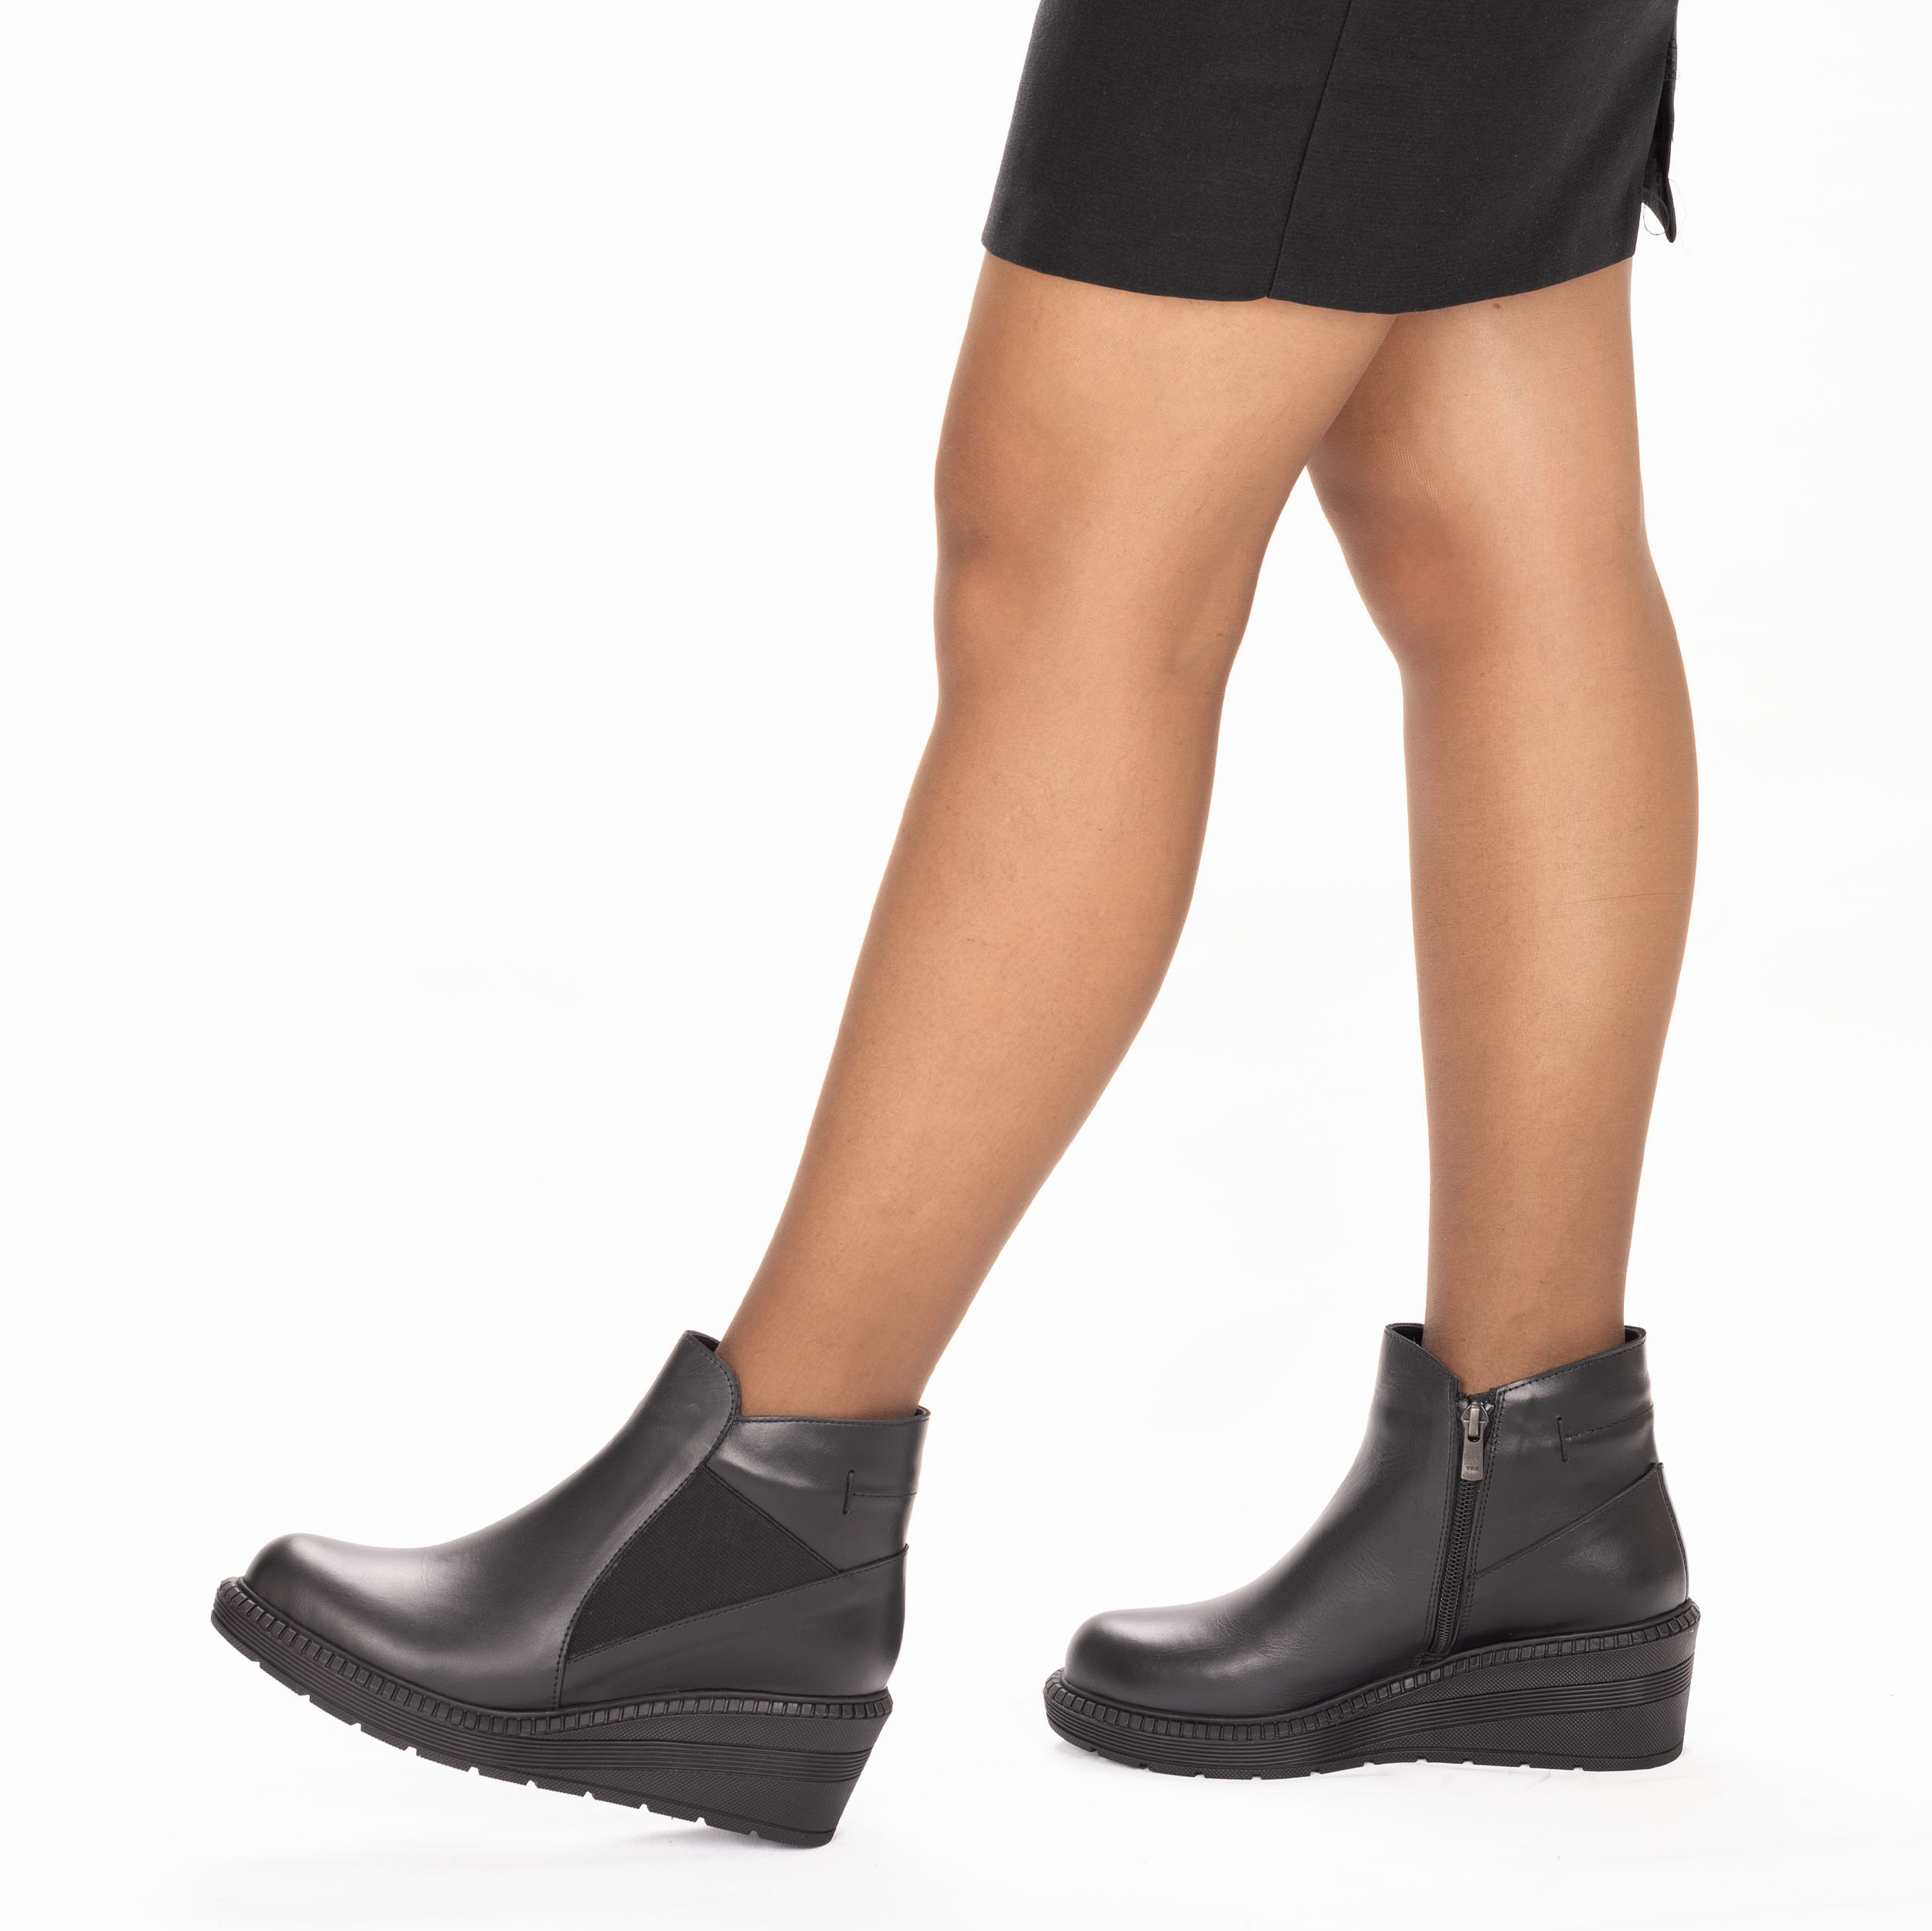 Kadın Hakiki Deri 5,5 Cm Dolgu Topuklu Günlük Bot, Renk: Siyah, Beden: 36